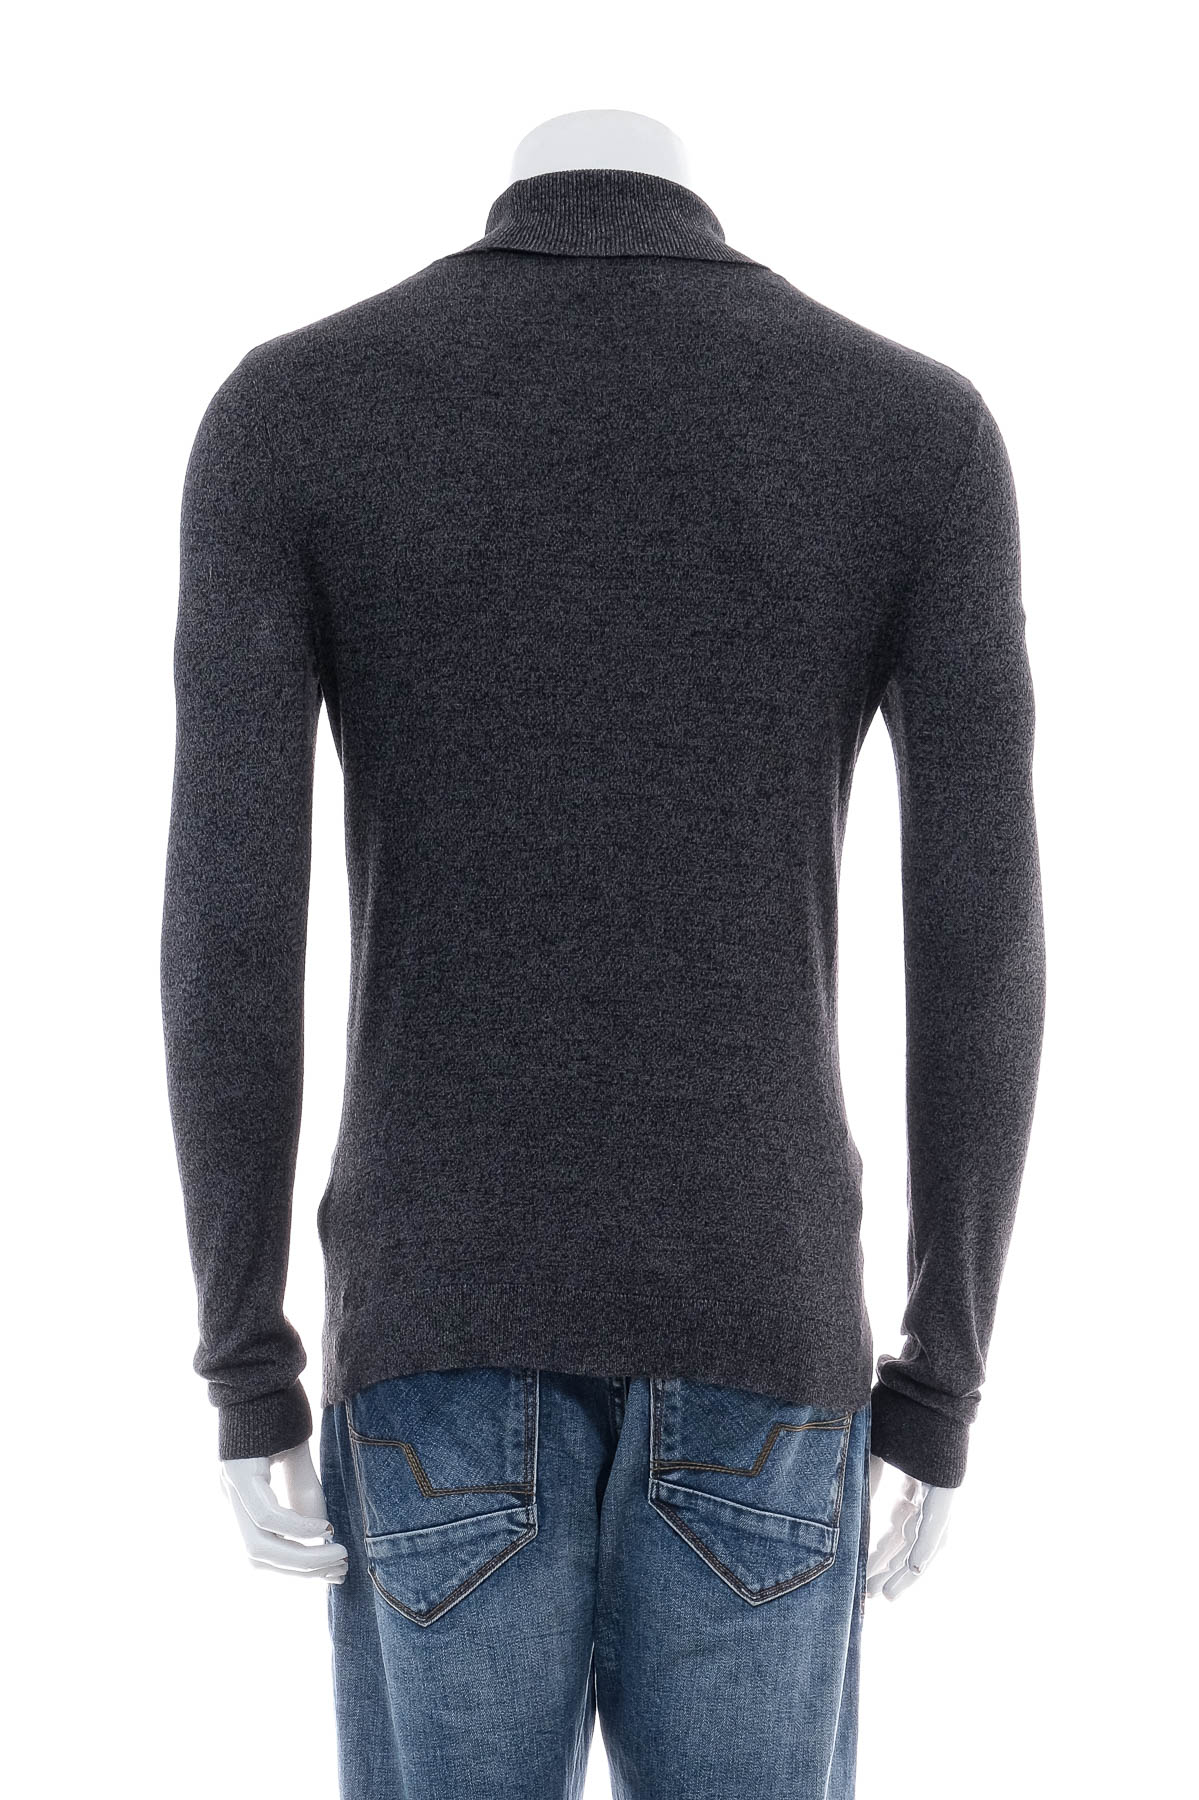 Men's sweater - TOPMAN - 1